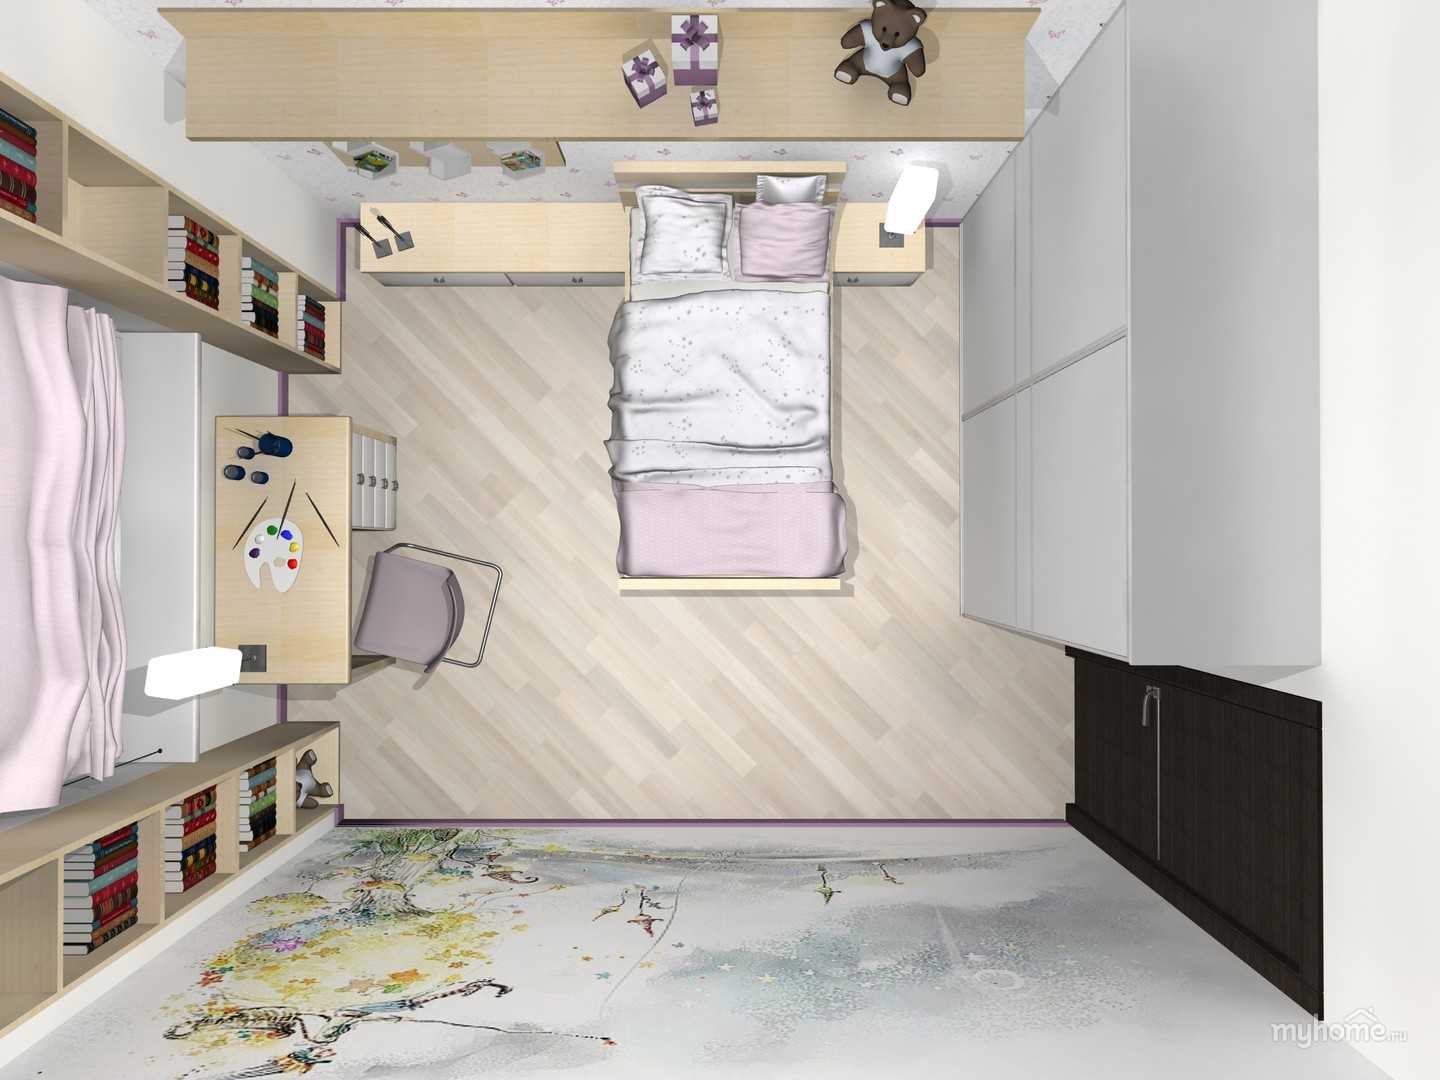 Дизайн интерьера детской комнаты для школьника мальчика и девочки первоклассника и подростка Зонирование (рабочая спальная игровая зоны) мебель (школьный стол стул кровать) освещение цветы